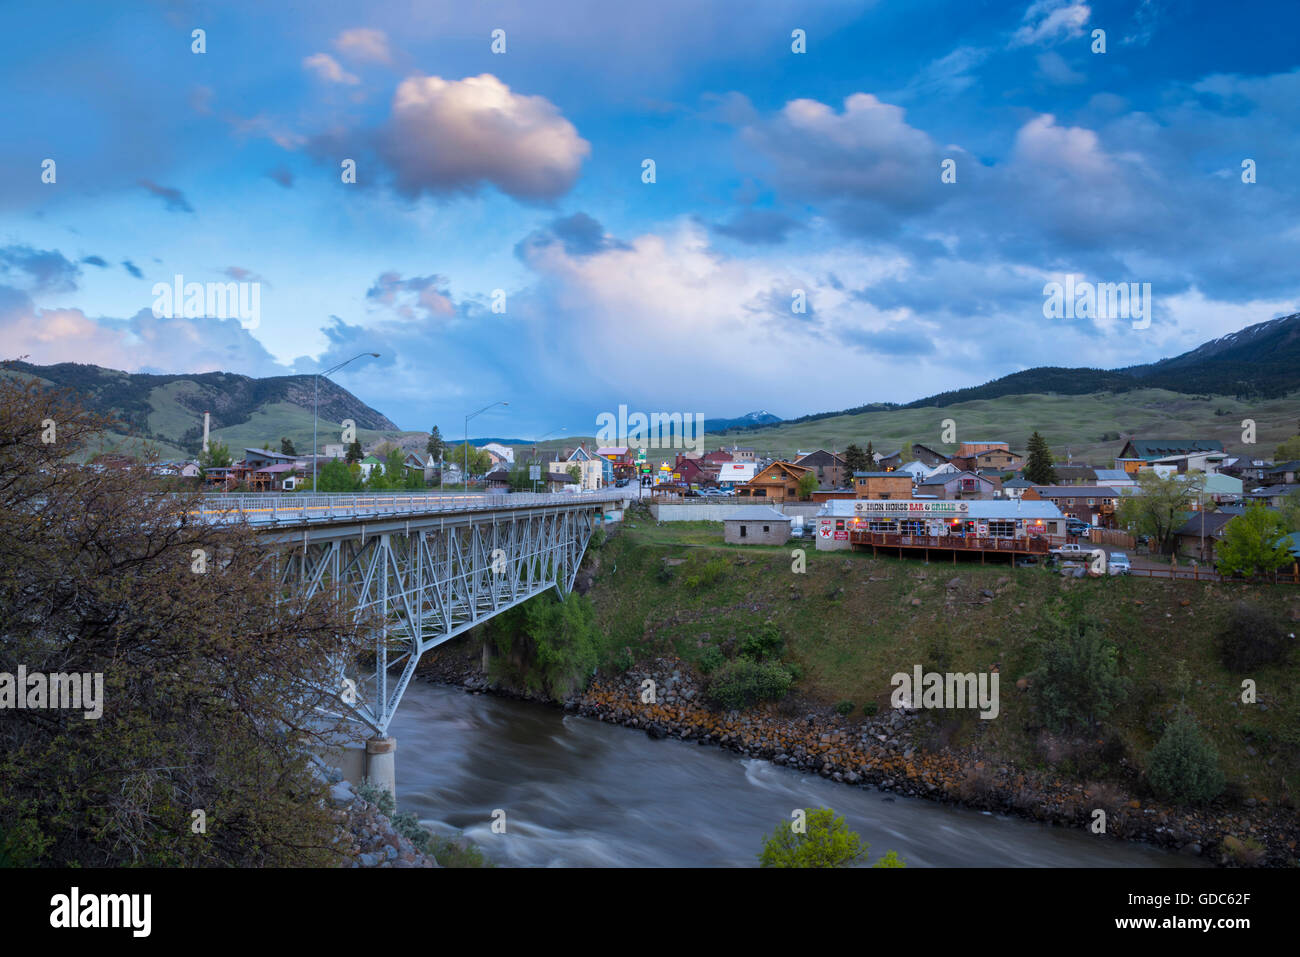 USA,Rocky Mountains,Montana,Gardiner,bridge over Gardiner river Stock Photo